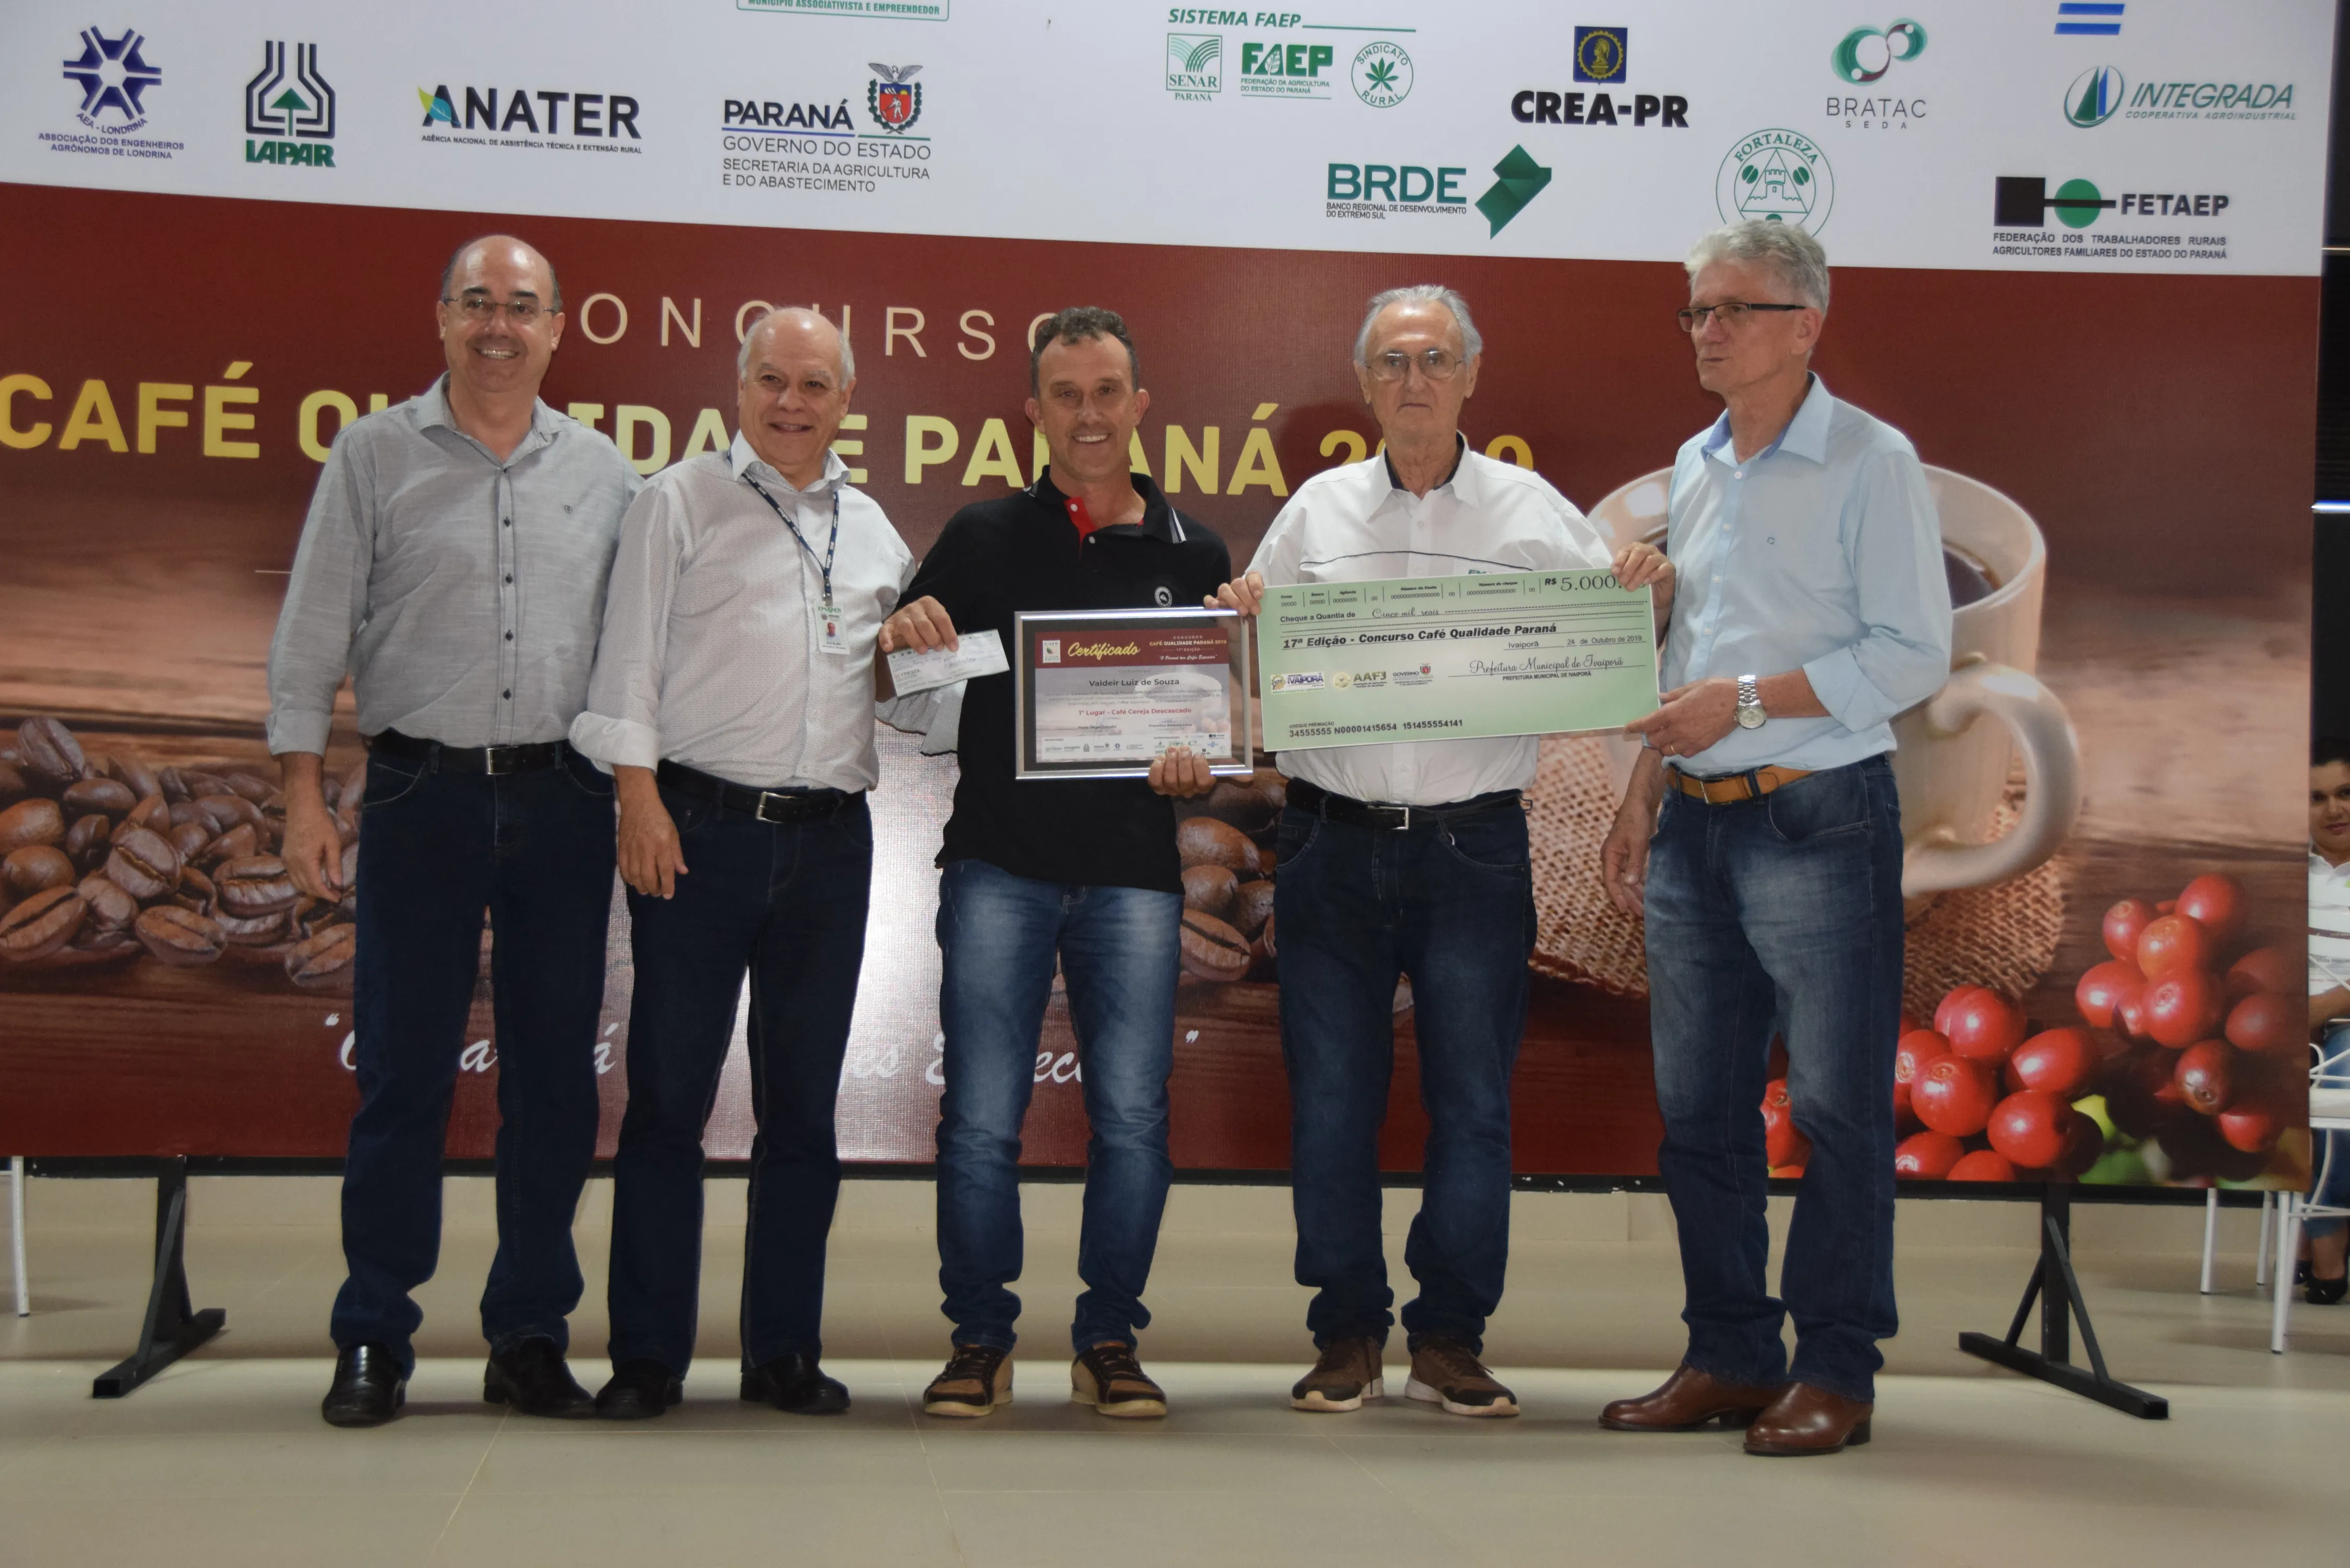 Cafés de Tomazina e Joaquim Távora são campeões do 17º Concurso de Qualidade Paraná